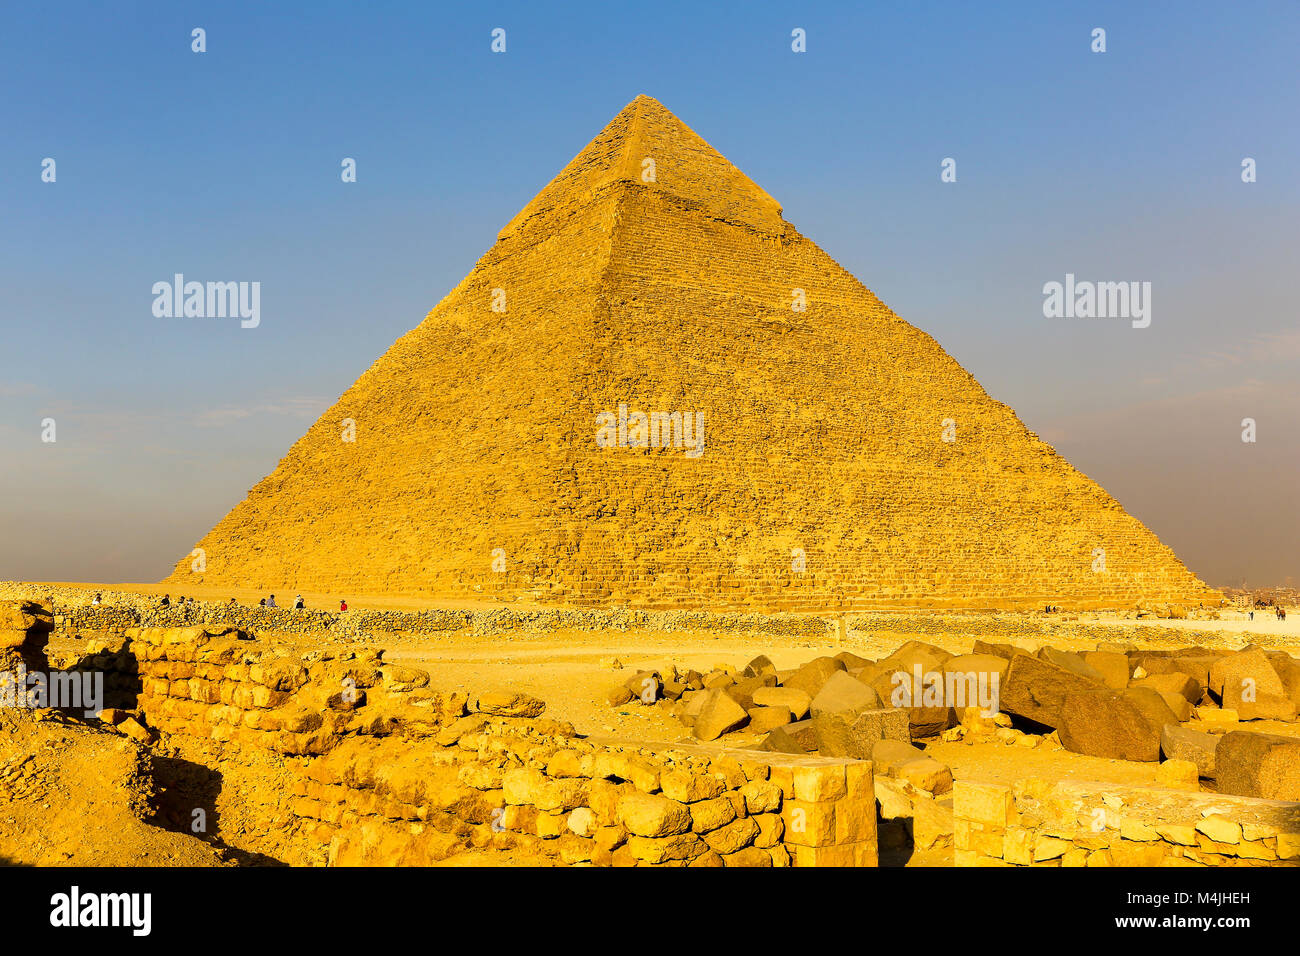 La grande pyramide de Gizeh, pyramides, Gizeh, Egypte, Afrique du Nord Banque D'Images